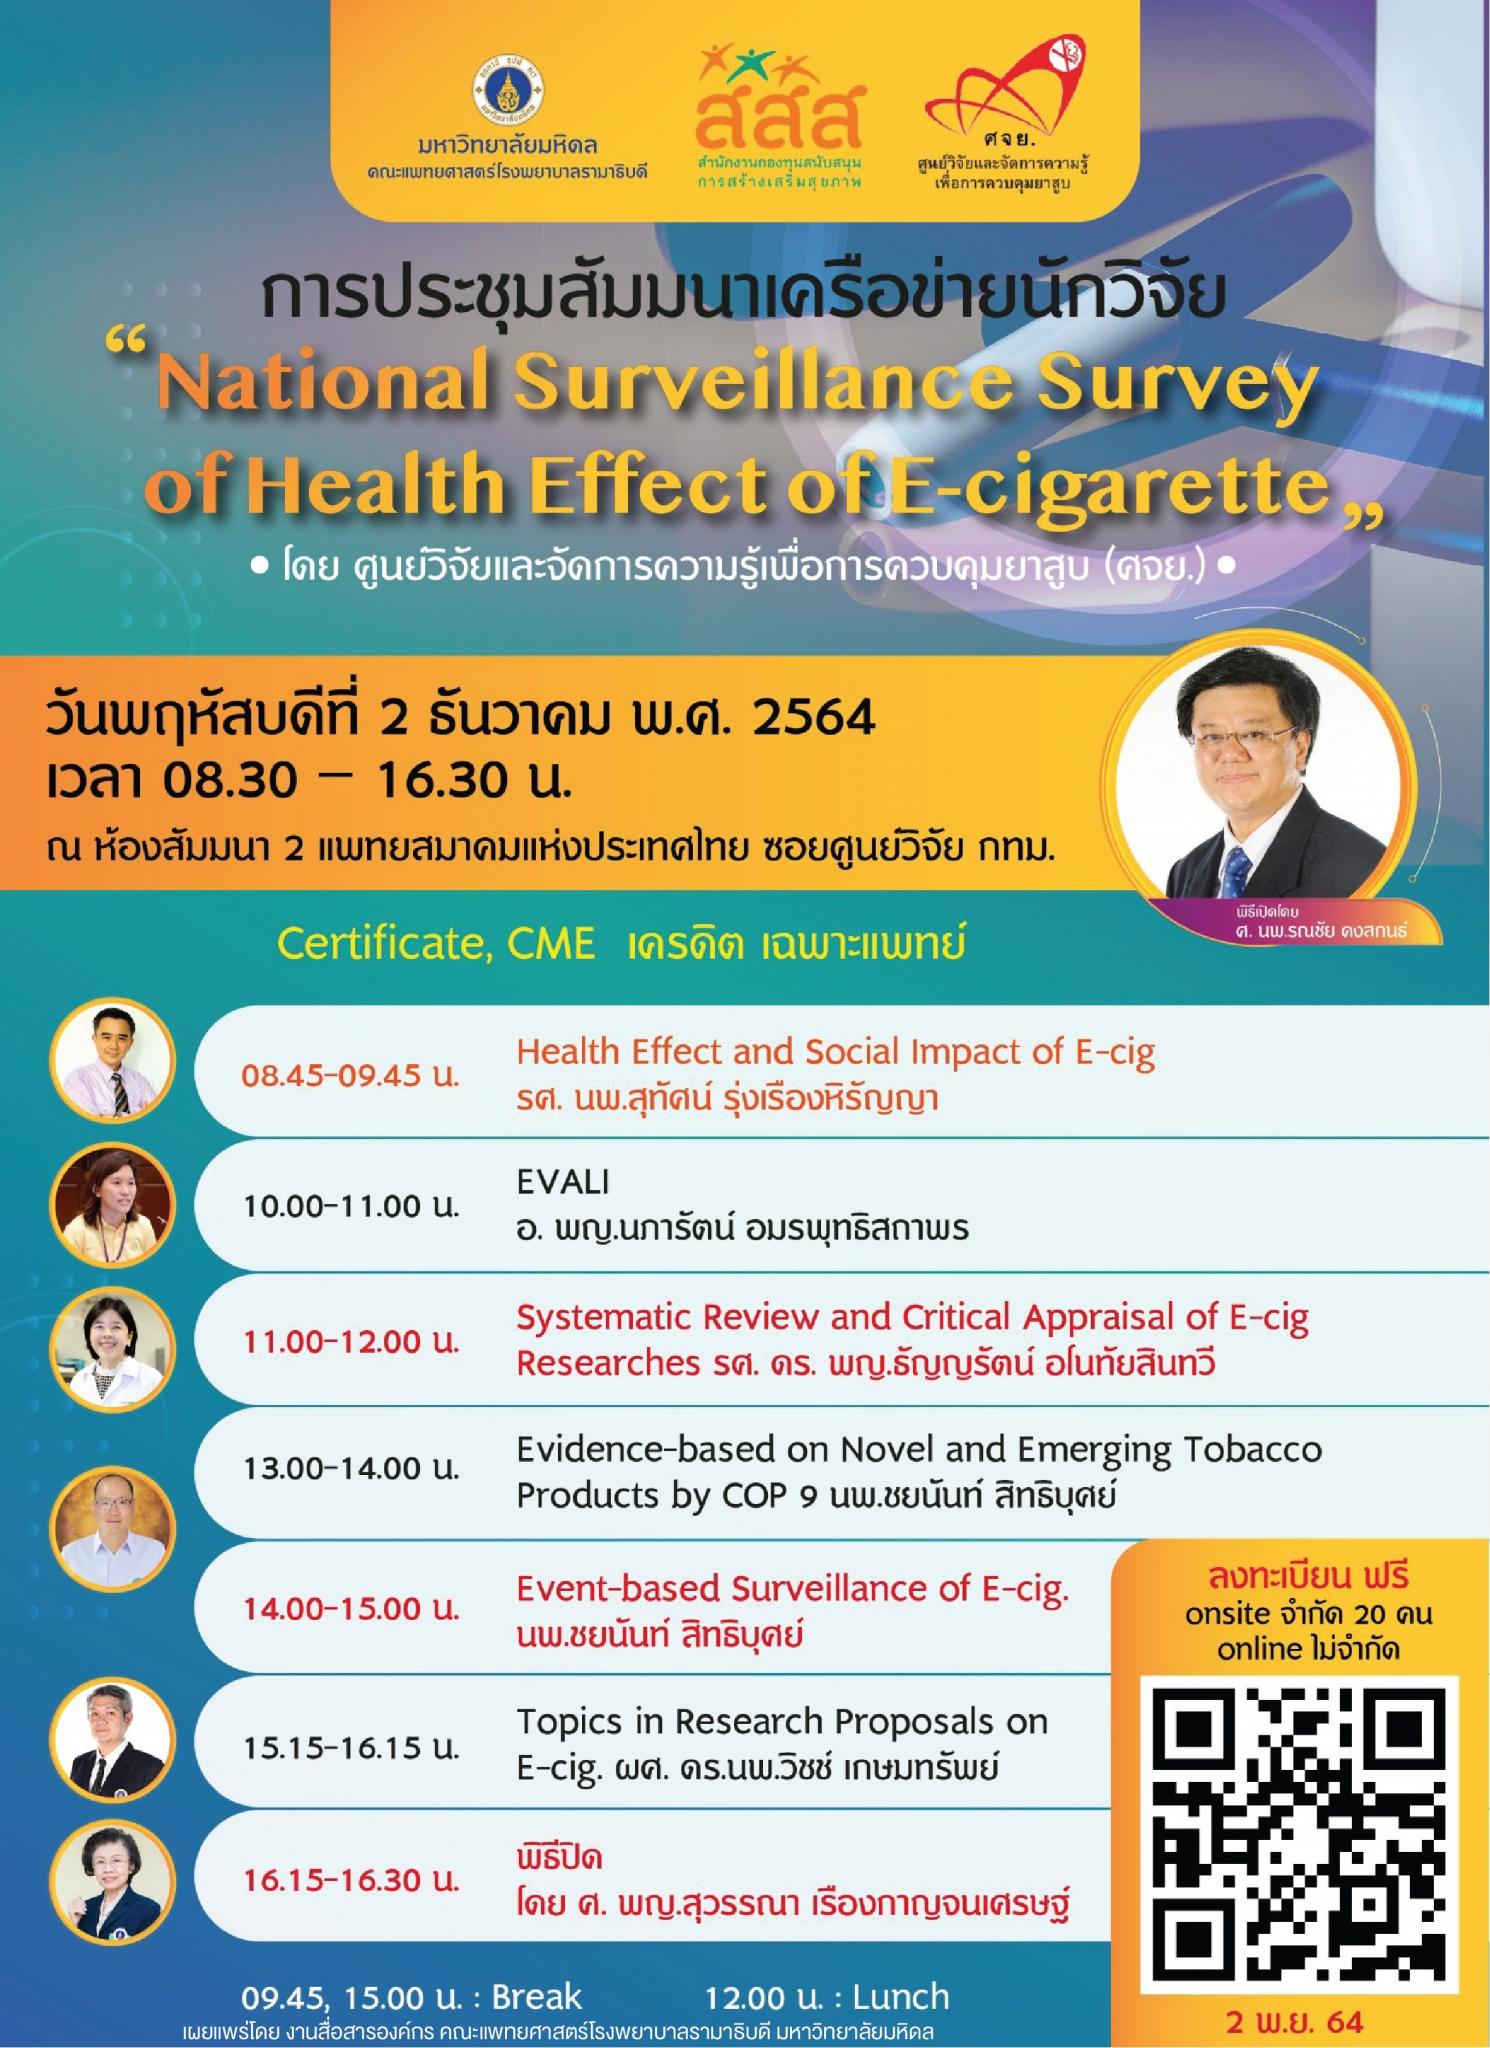 การประชุมสัมมนาเครือข่ายนักวิจัย "National Surveillance Survey of Health Effect of E-cigarette"